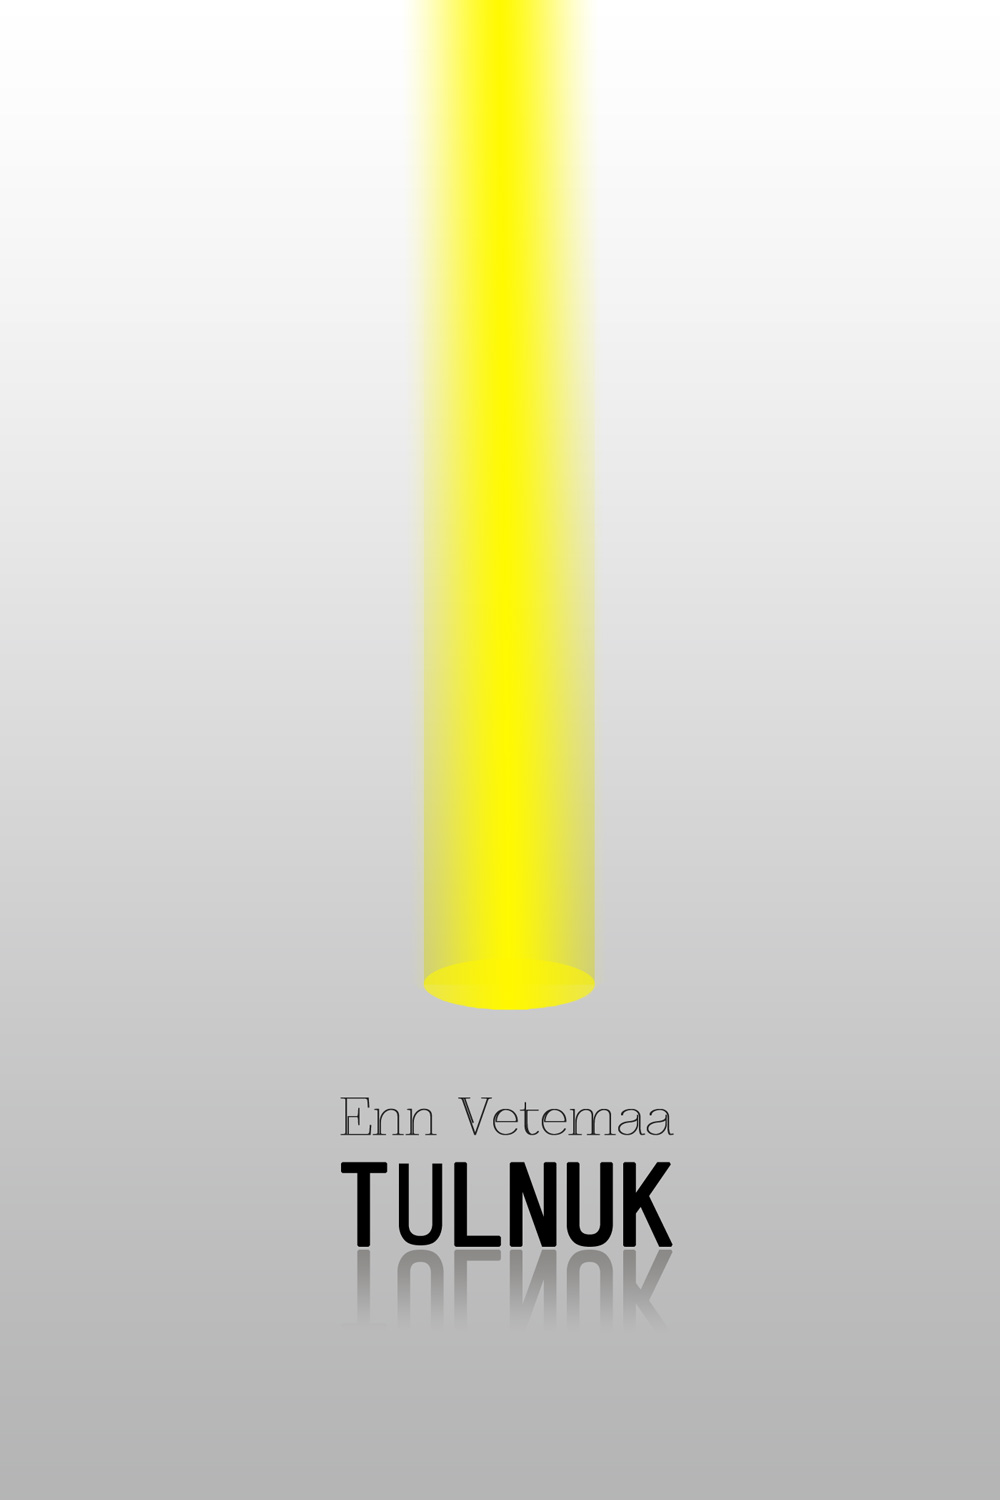 Книга Tulnuk из серии , созданная Enn Vetemaa, может относится к жанру Литература 20 века. Стоимость электронной книги Tulnuk с идентификатором 21187684 составляет 491.15 руб.